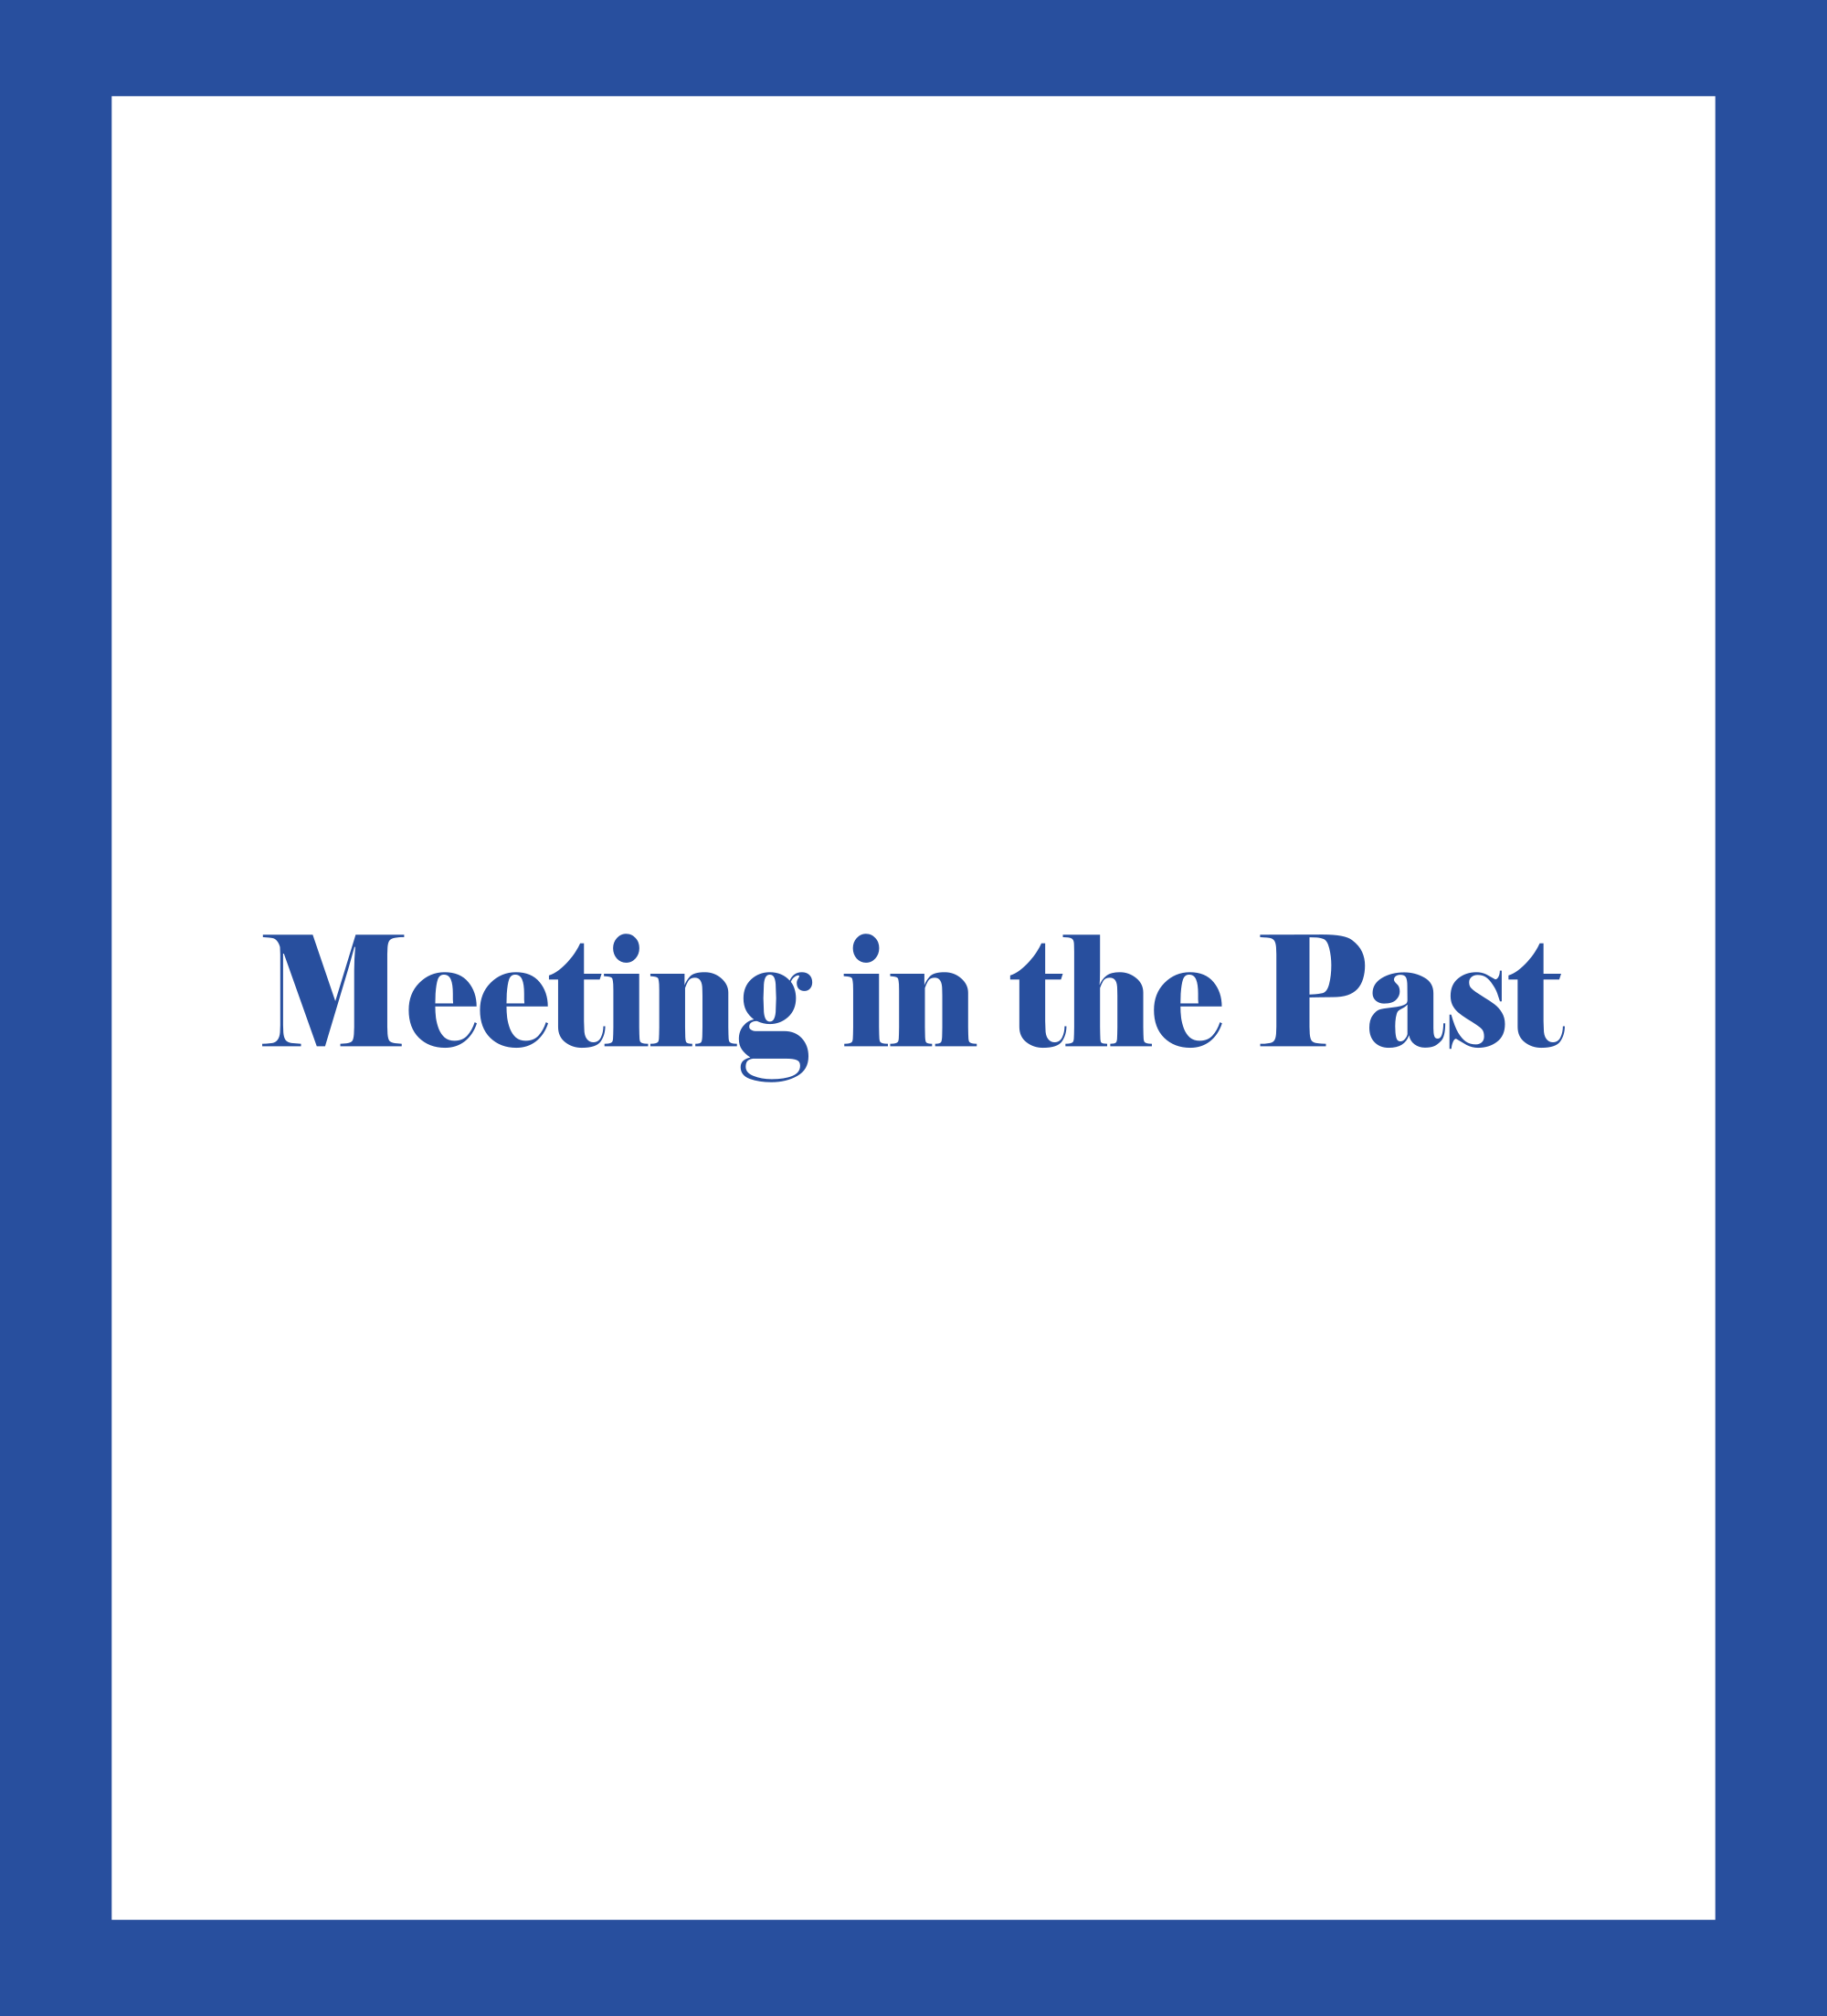 Caratula de Meeting in the Past (Encuentro en el pasado) 